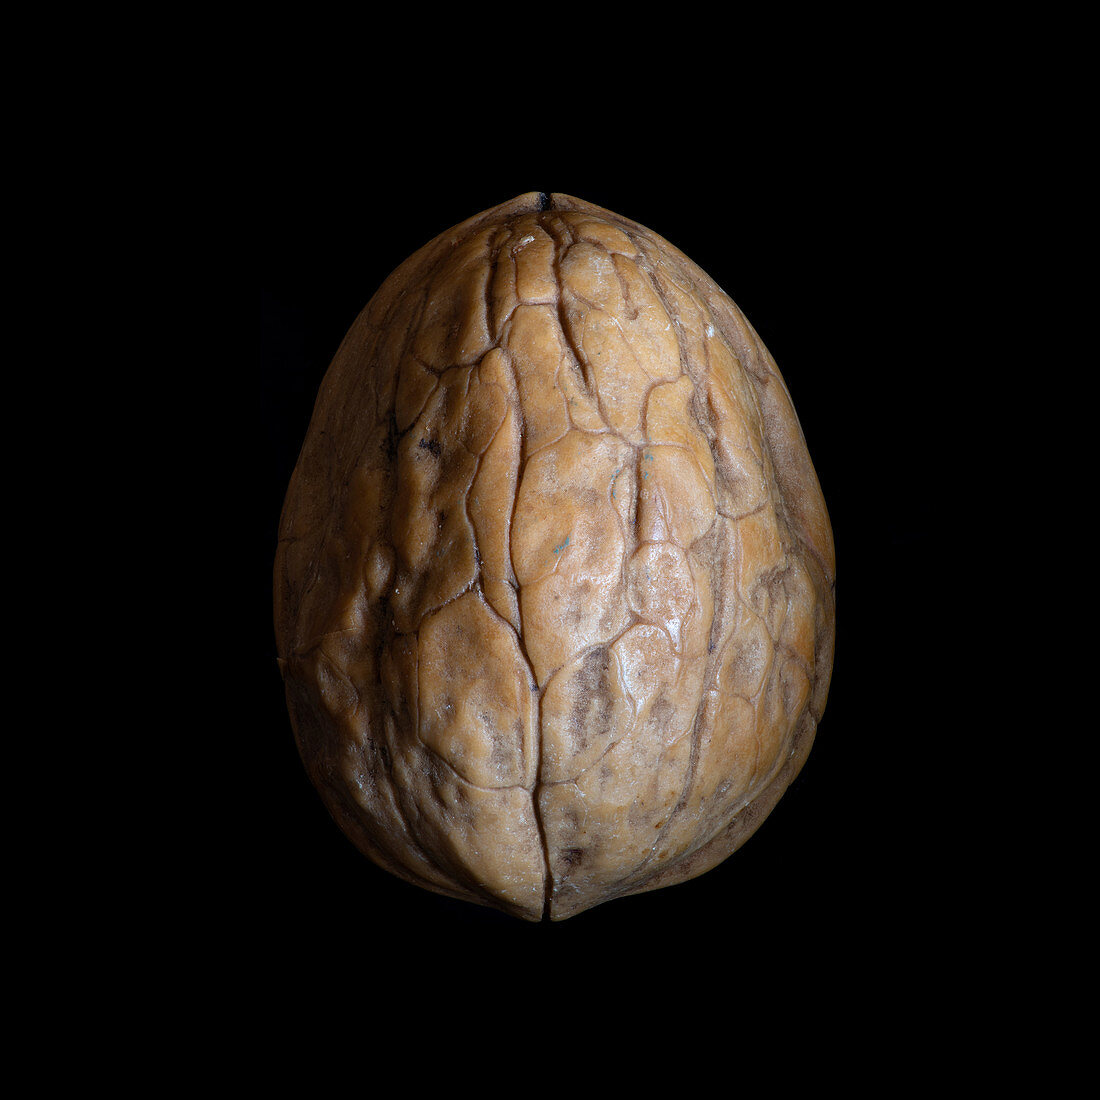 English walnut (Juglans regia)